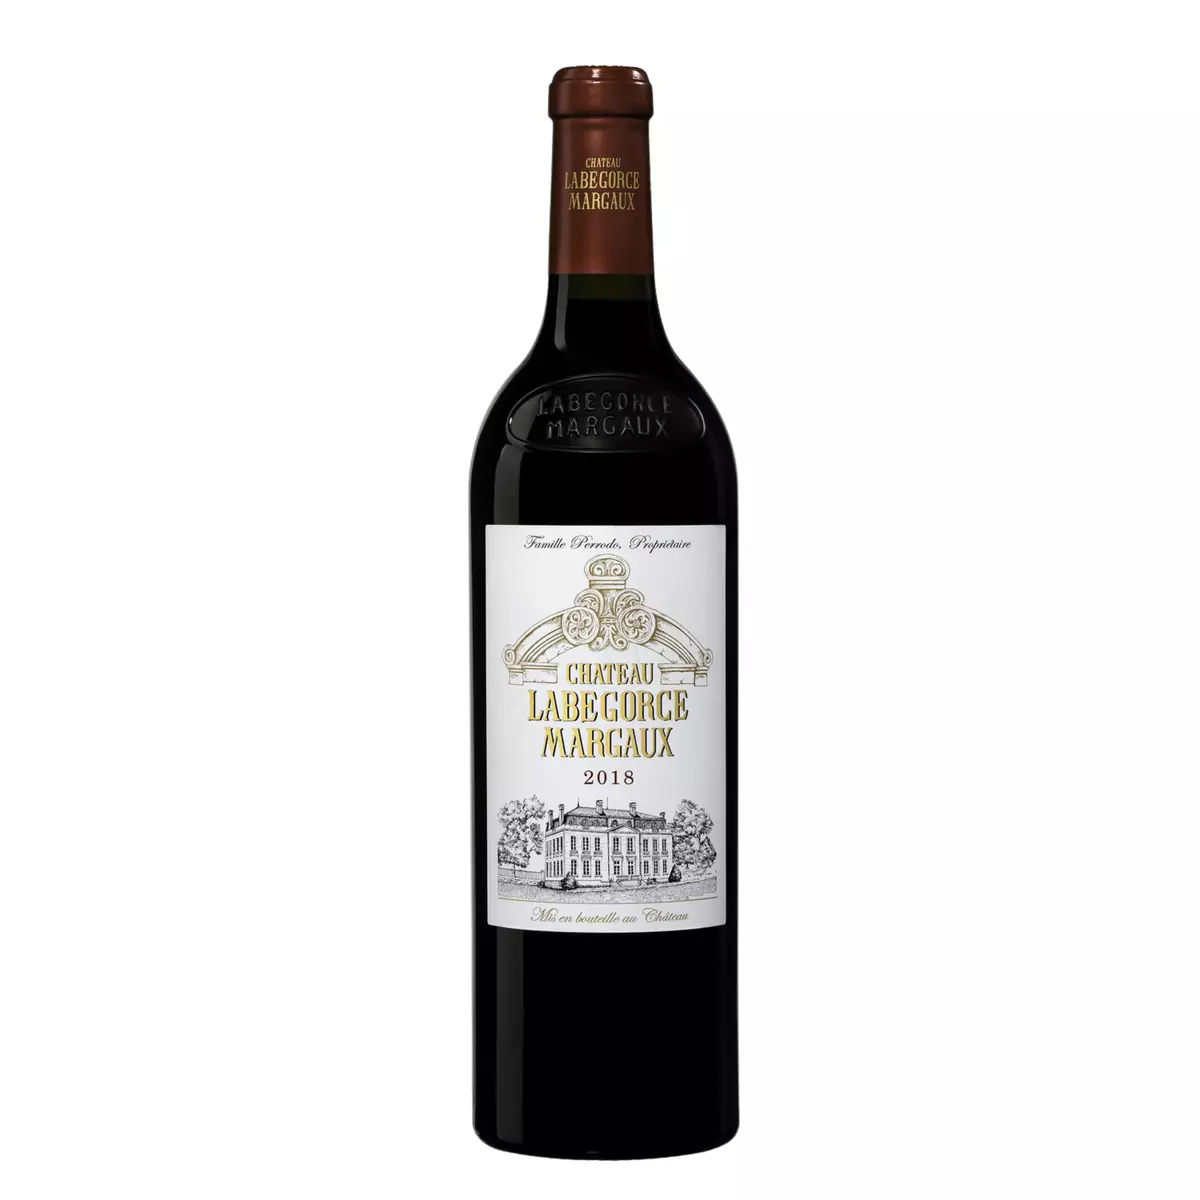 Vin rouge AOP Margaux Château Labégorce cru bourgeois 2018 75cl